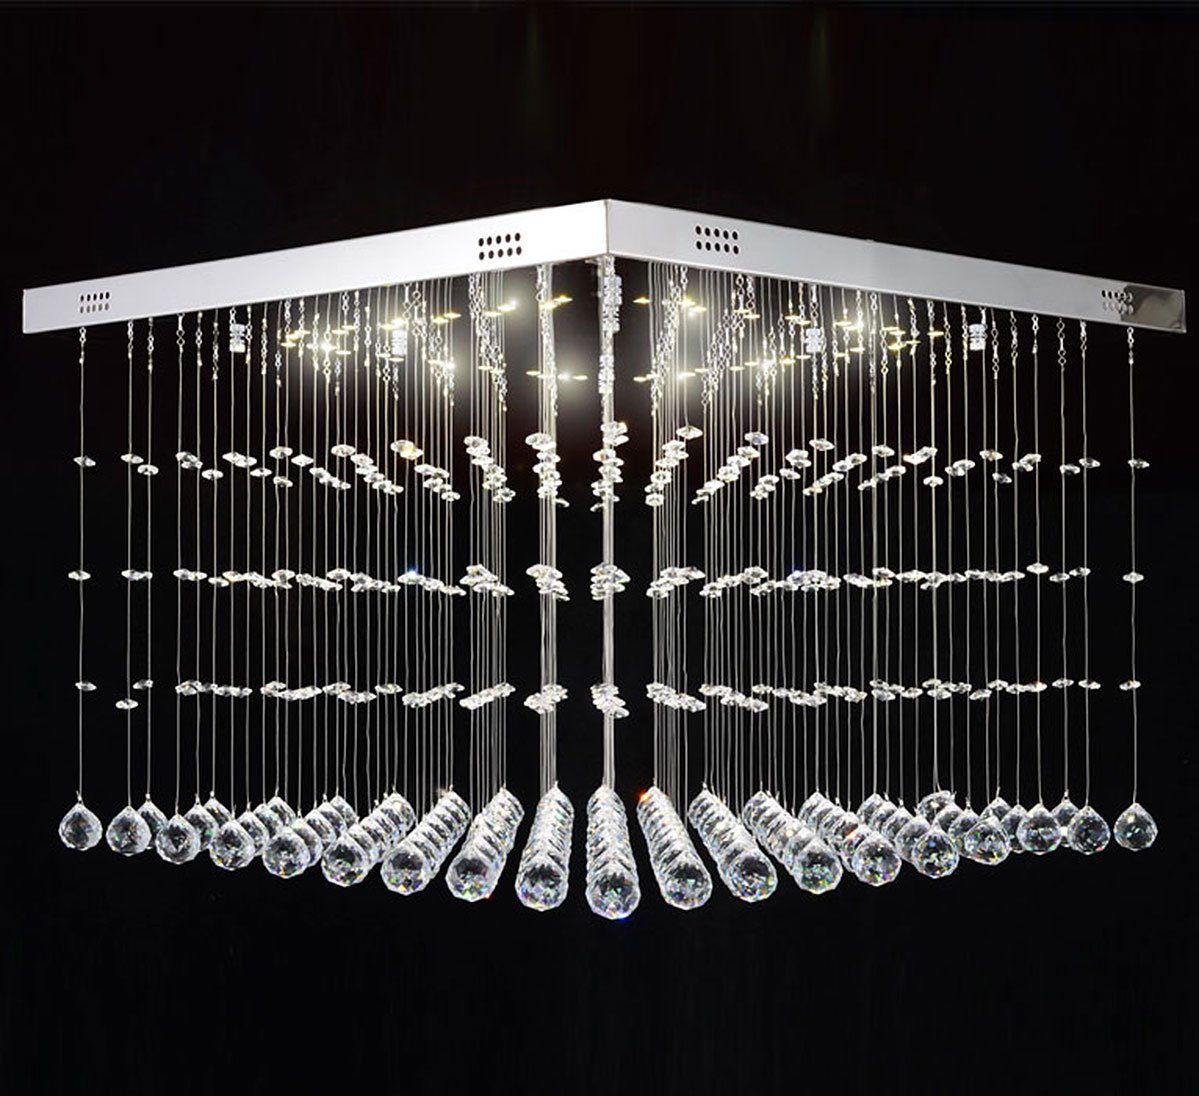 Lewima LED Deckenleuchte XL Deckenlampe Kristall aus Glas 60x60cm 24W,  Dimmbar mit Fernbedienung, Warmweiß, Wohnzimmer Würfel Lampe Modell Dadi,  Silber